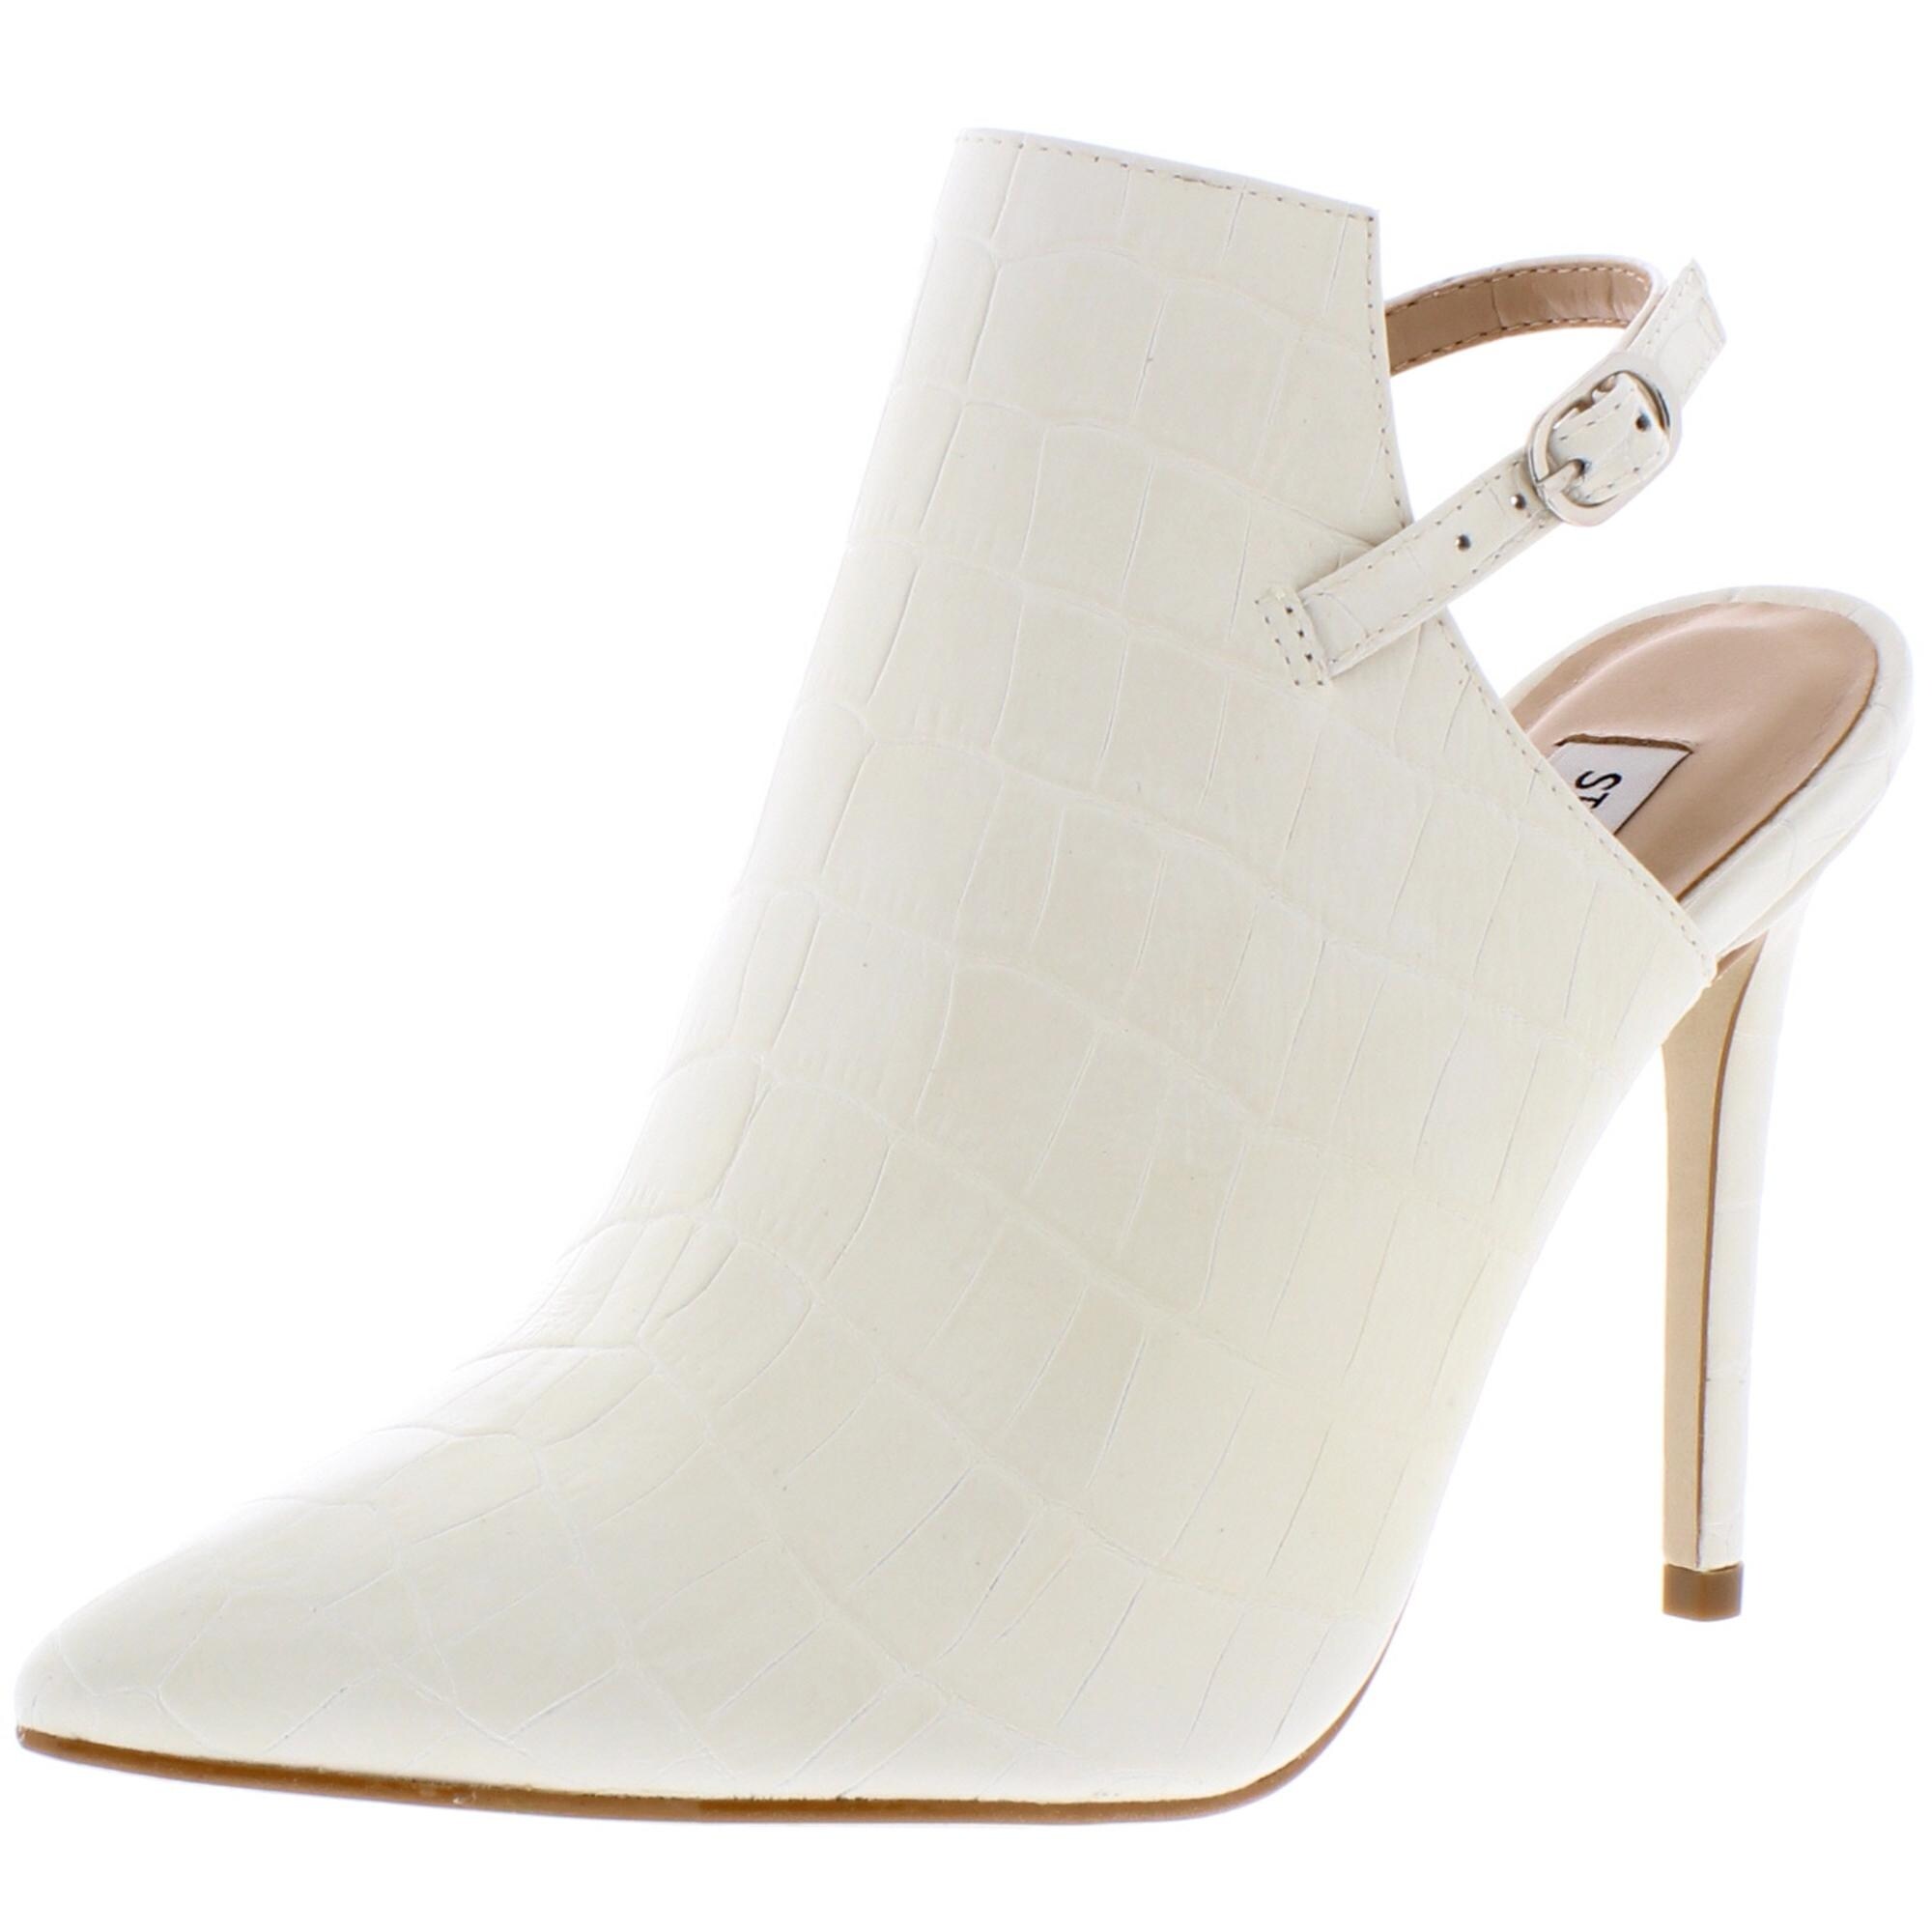 iconic white heels